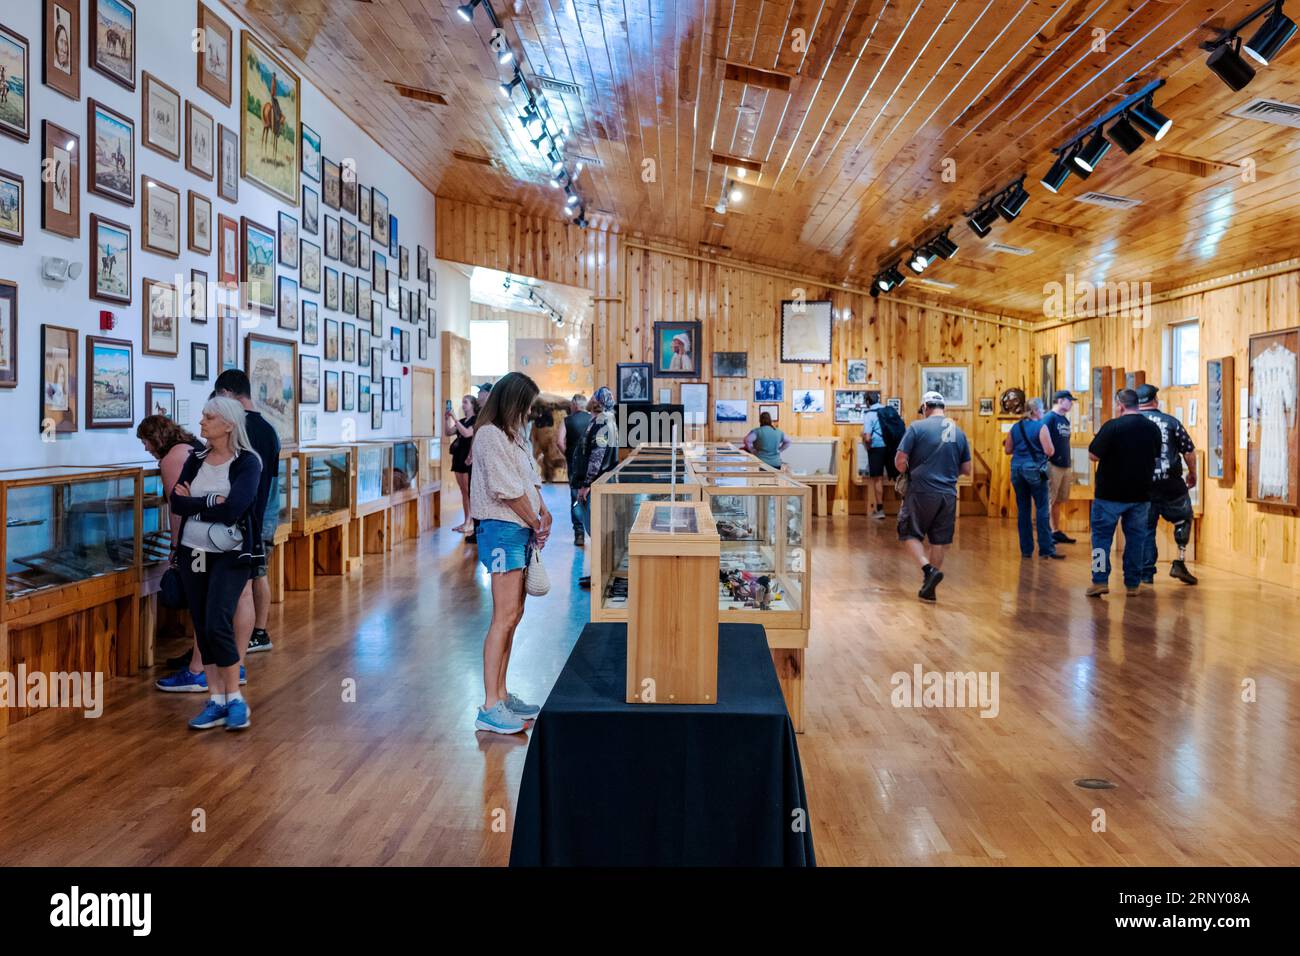 Les touristes visitent Crazy Horse Memorial ; expositions de musée intérieur ; Custer City ; Dakota du Sud ; États-Unis Banque D'Images